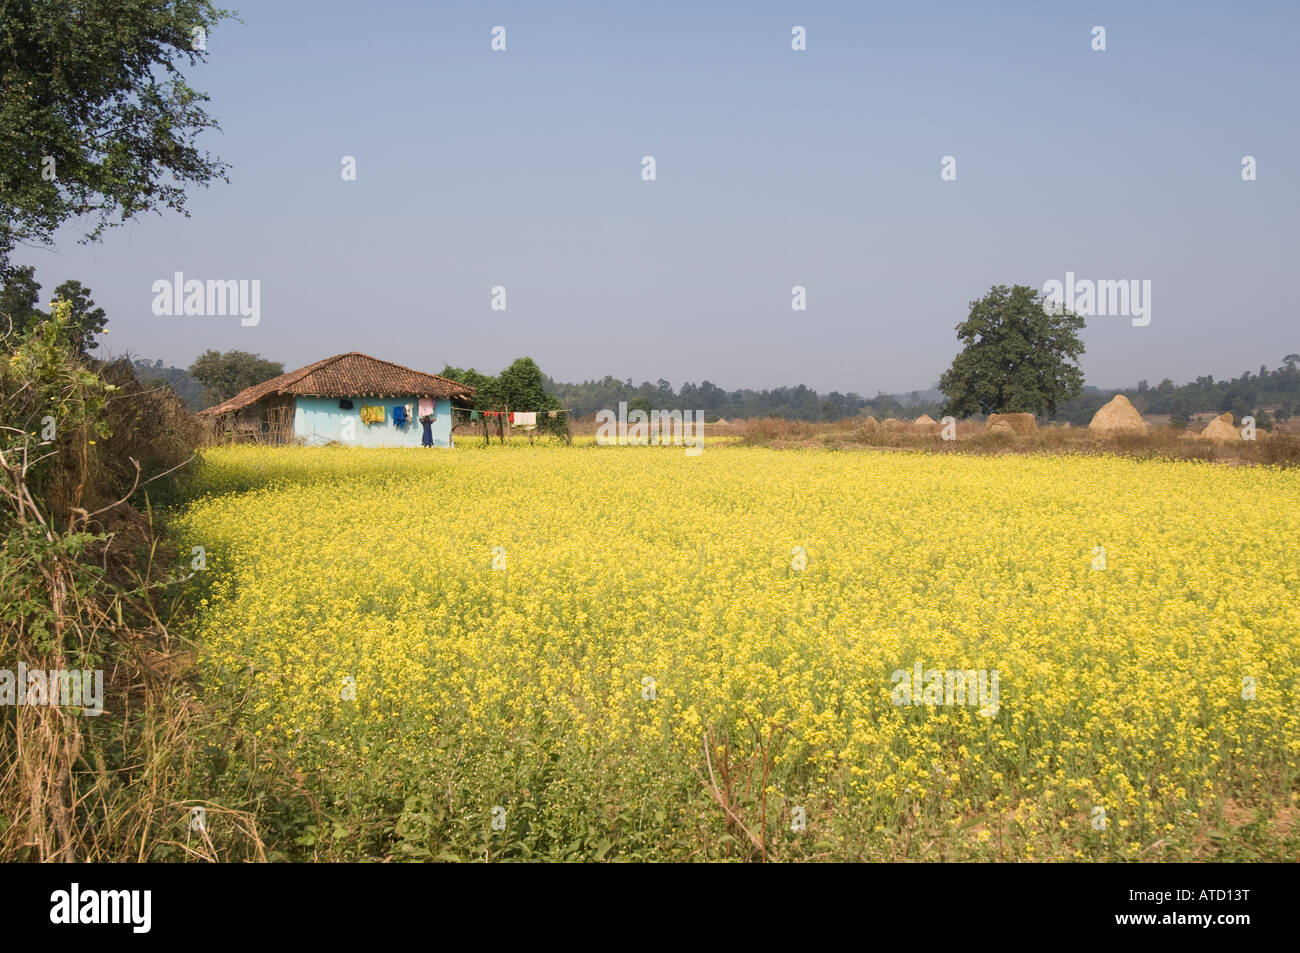 Farmer house in a mustard field Stock Photo